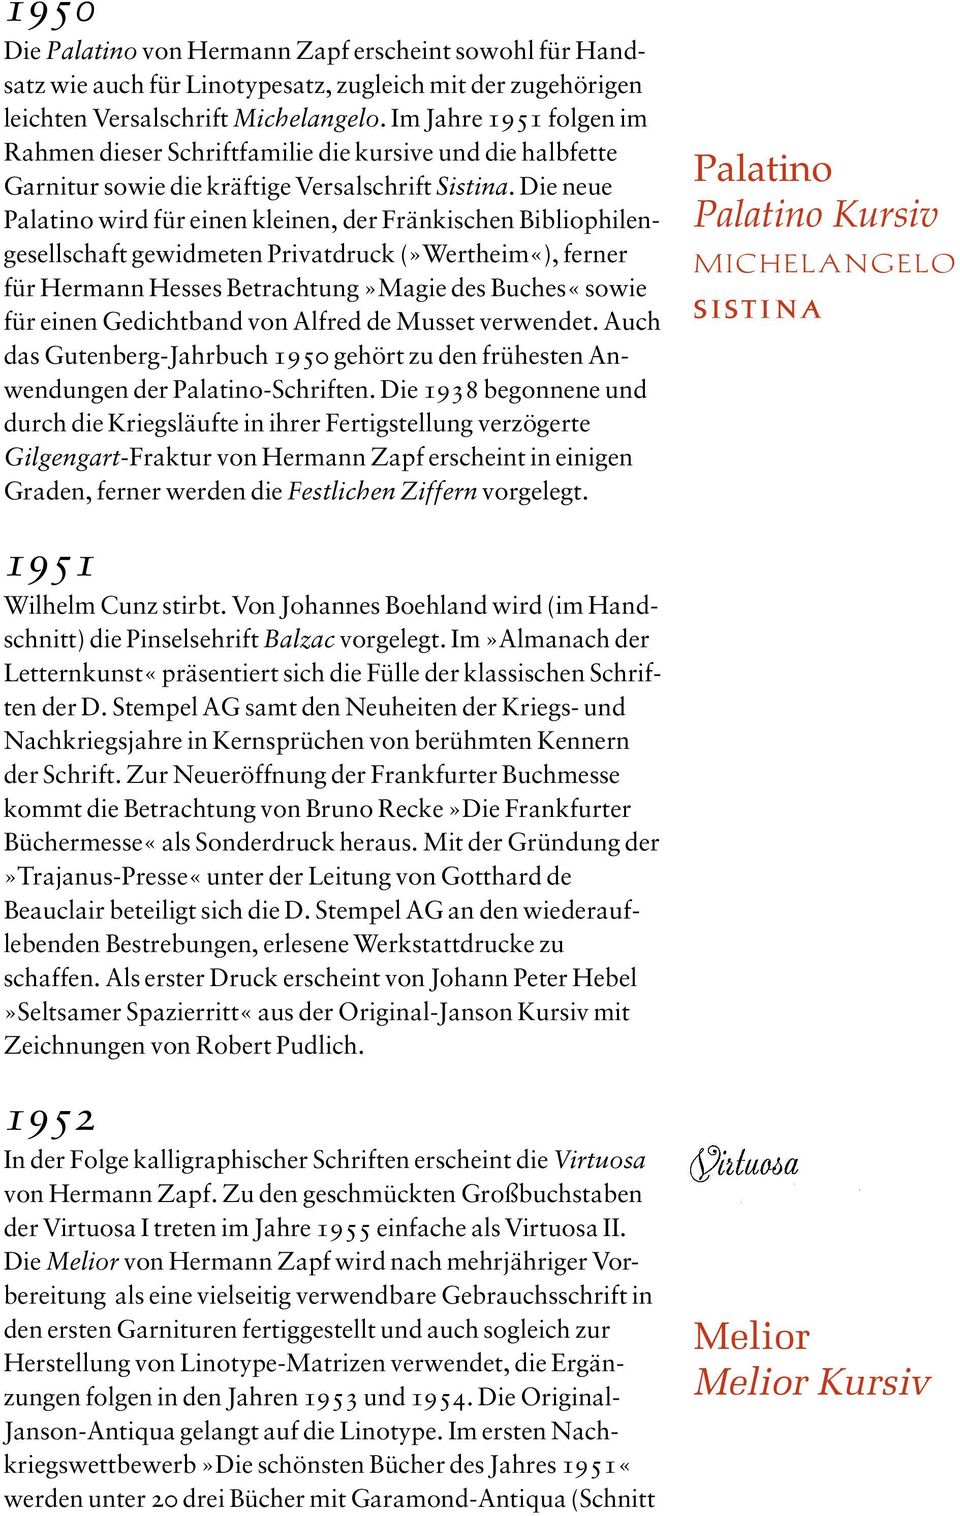 Die neue Palatino wird für einen kleinen, der Fränkischen Bibliophilengesellschaft gewidmeten Privatdruck (»Wertheim«), ferner für Hermann Hesses Betrachtung»Magie des Buches«sowie für einen